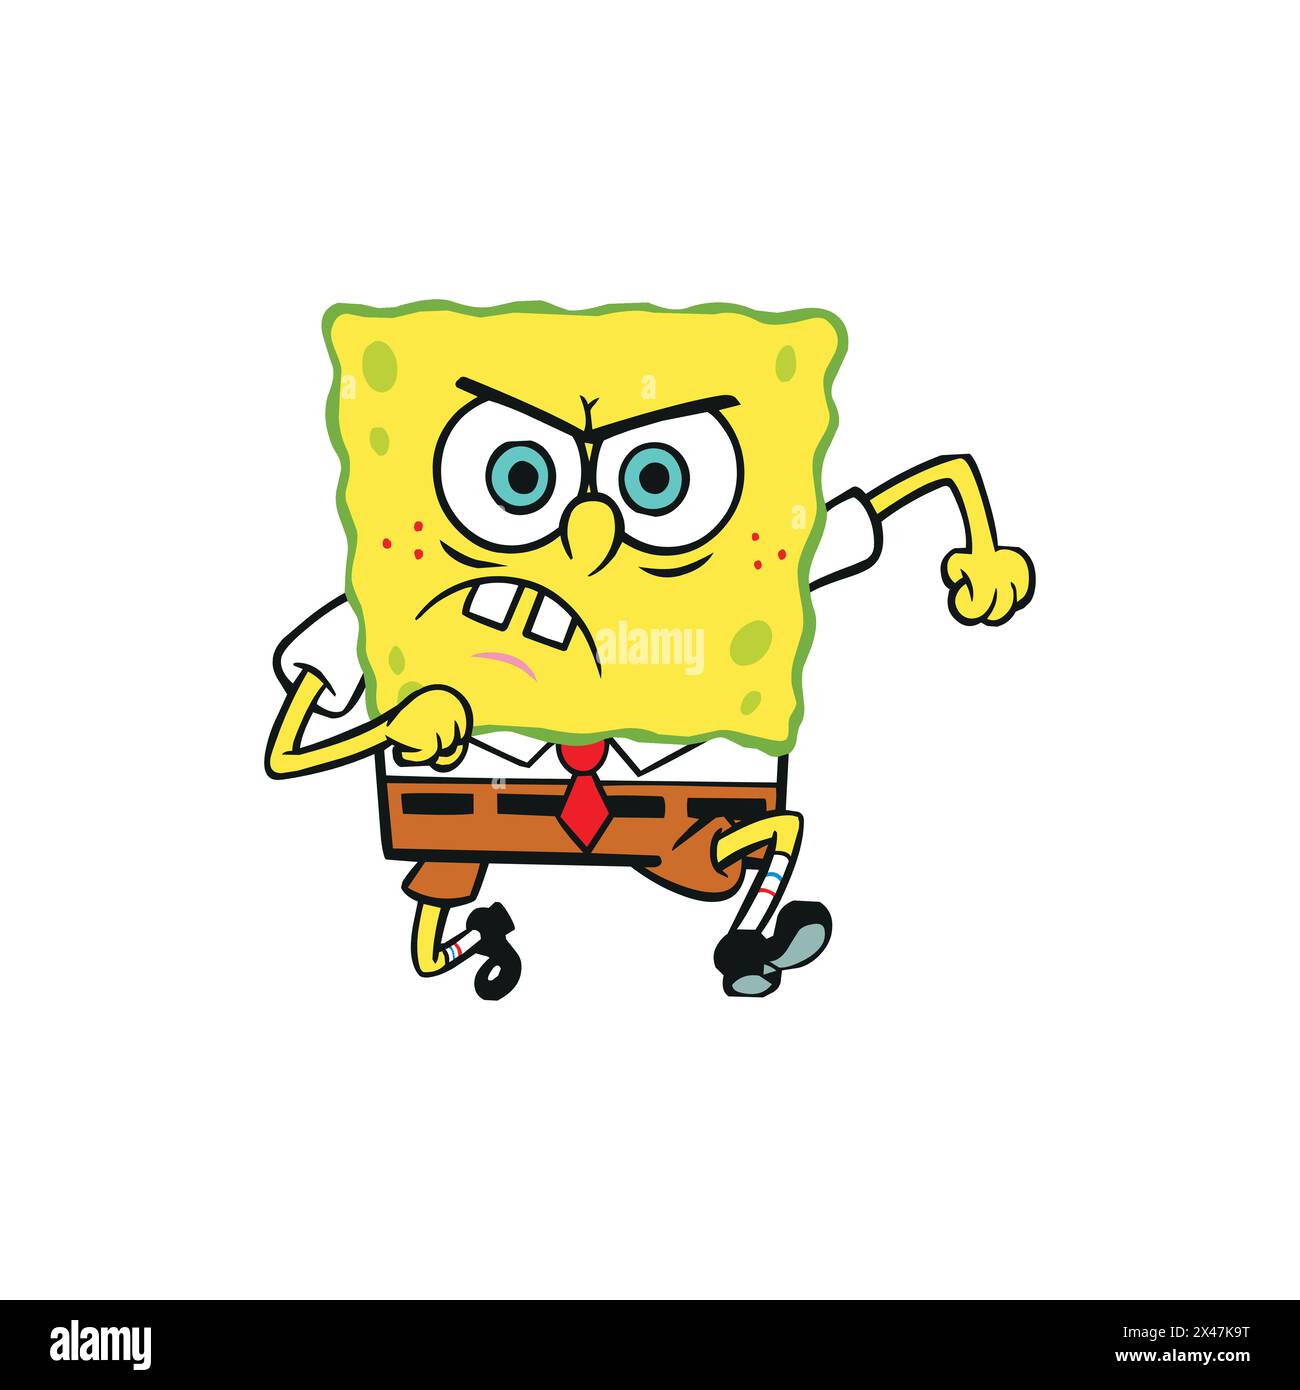 Spongebob squarepants personnage Angry expression vecteur illustration Illustration de Vecteur